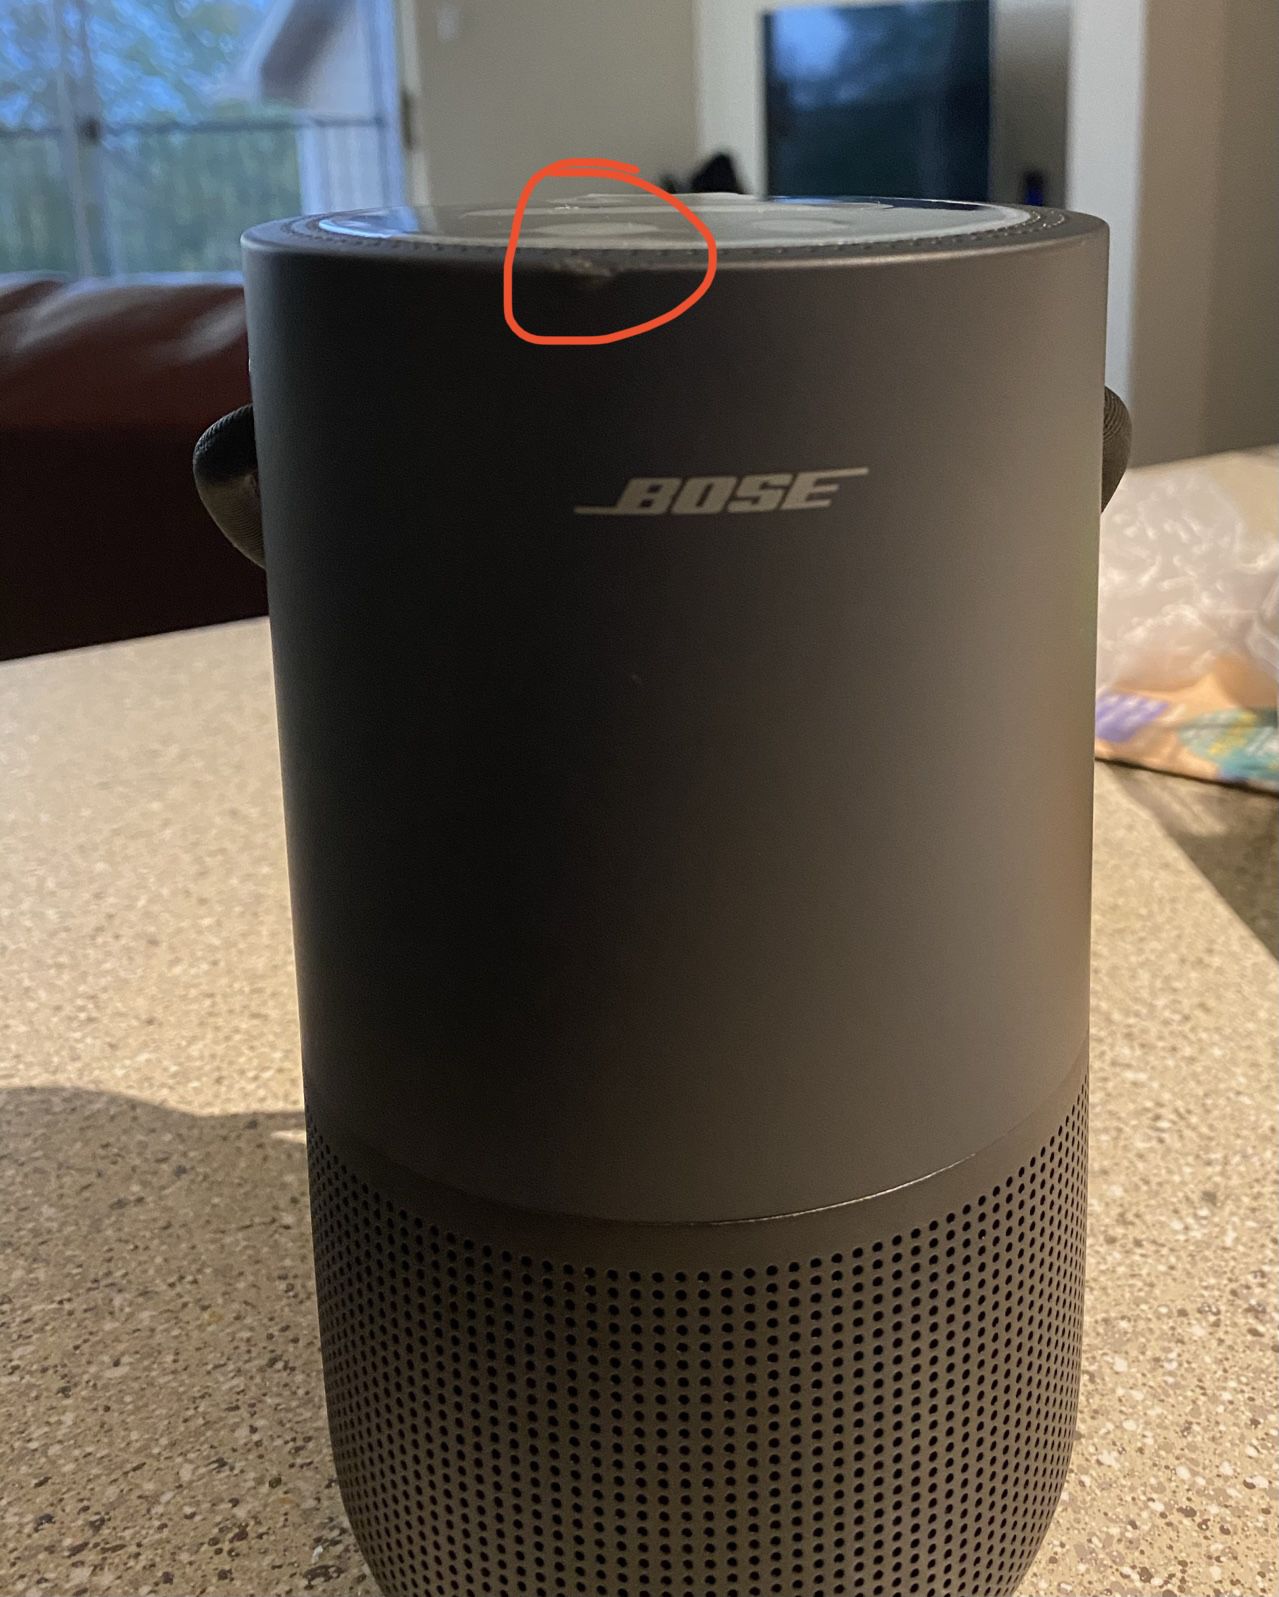 Bose portable home speaker